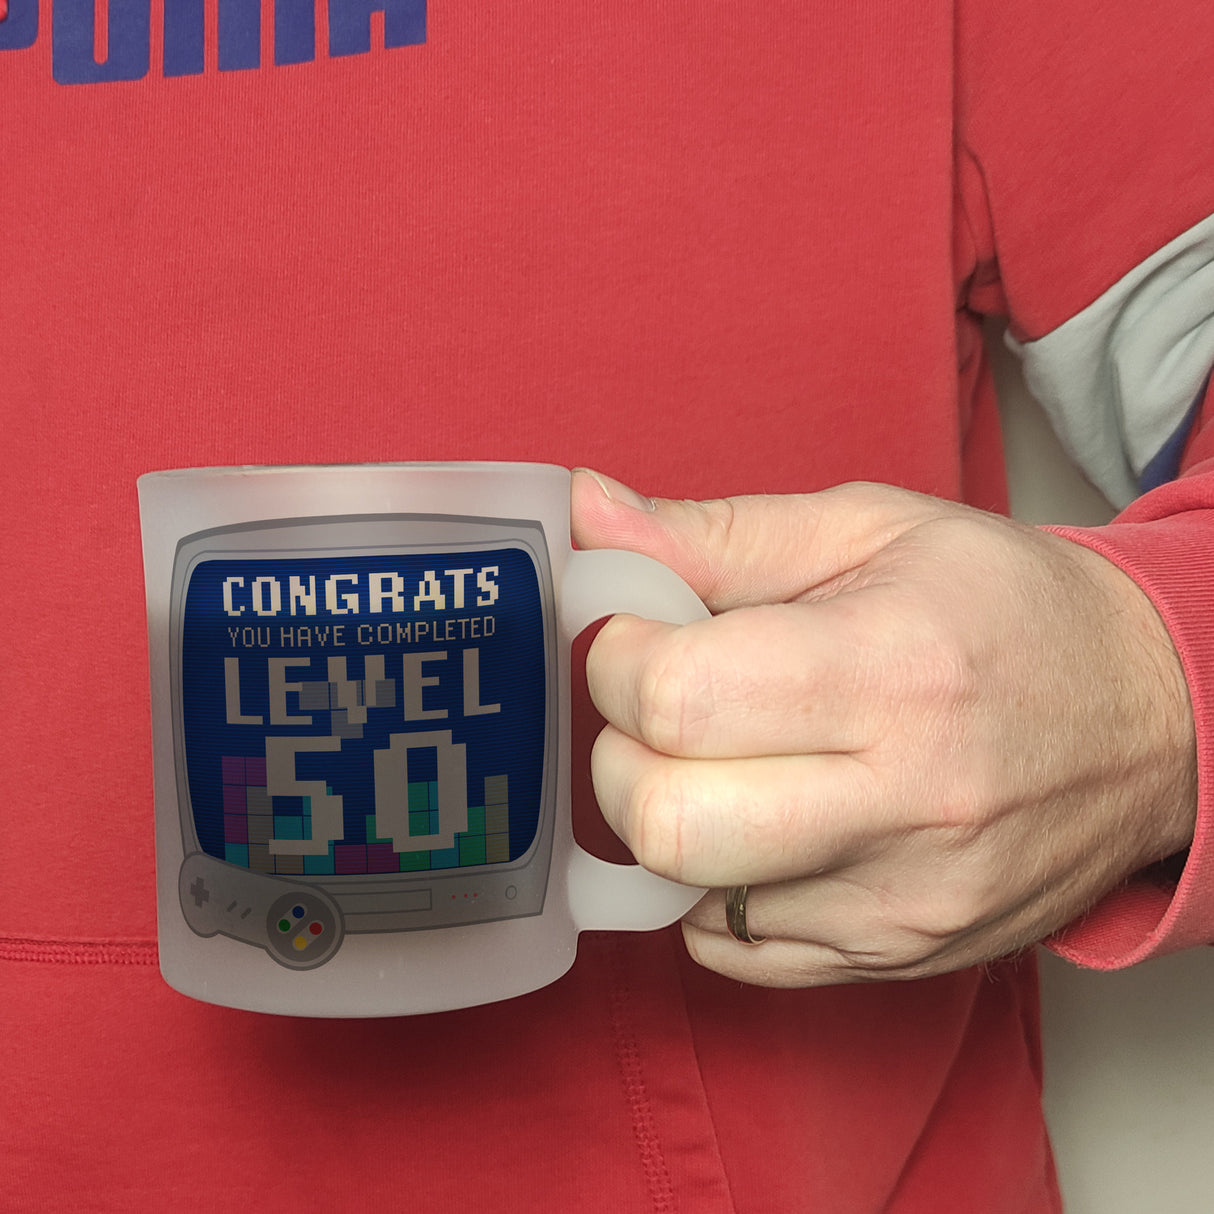 Witziger Kaffeebecher für den 50. Geburtstag mit Motiv: Gamer